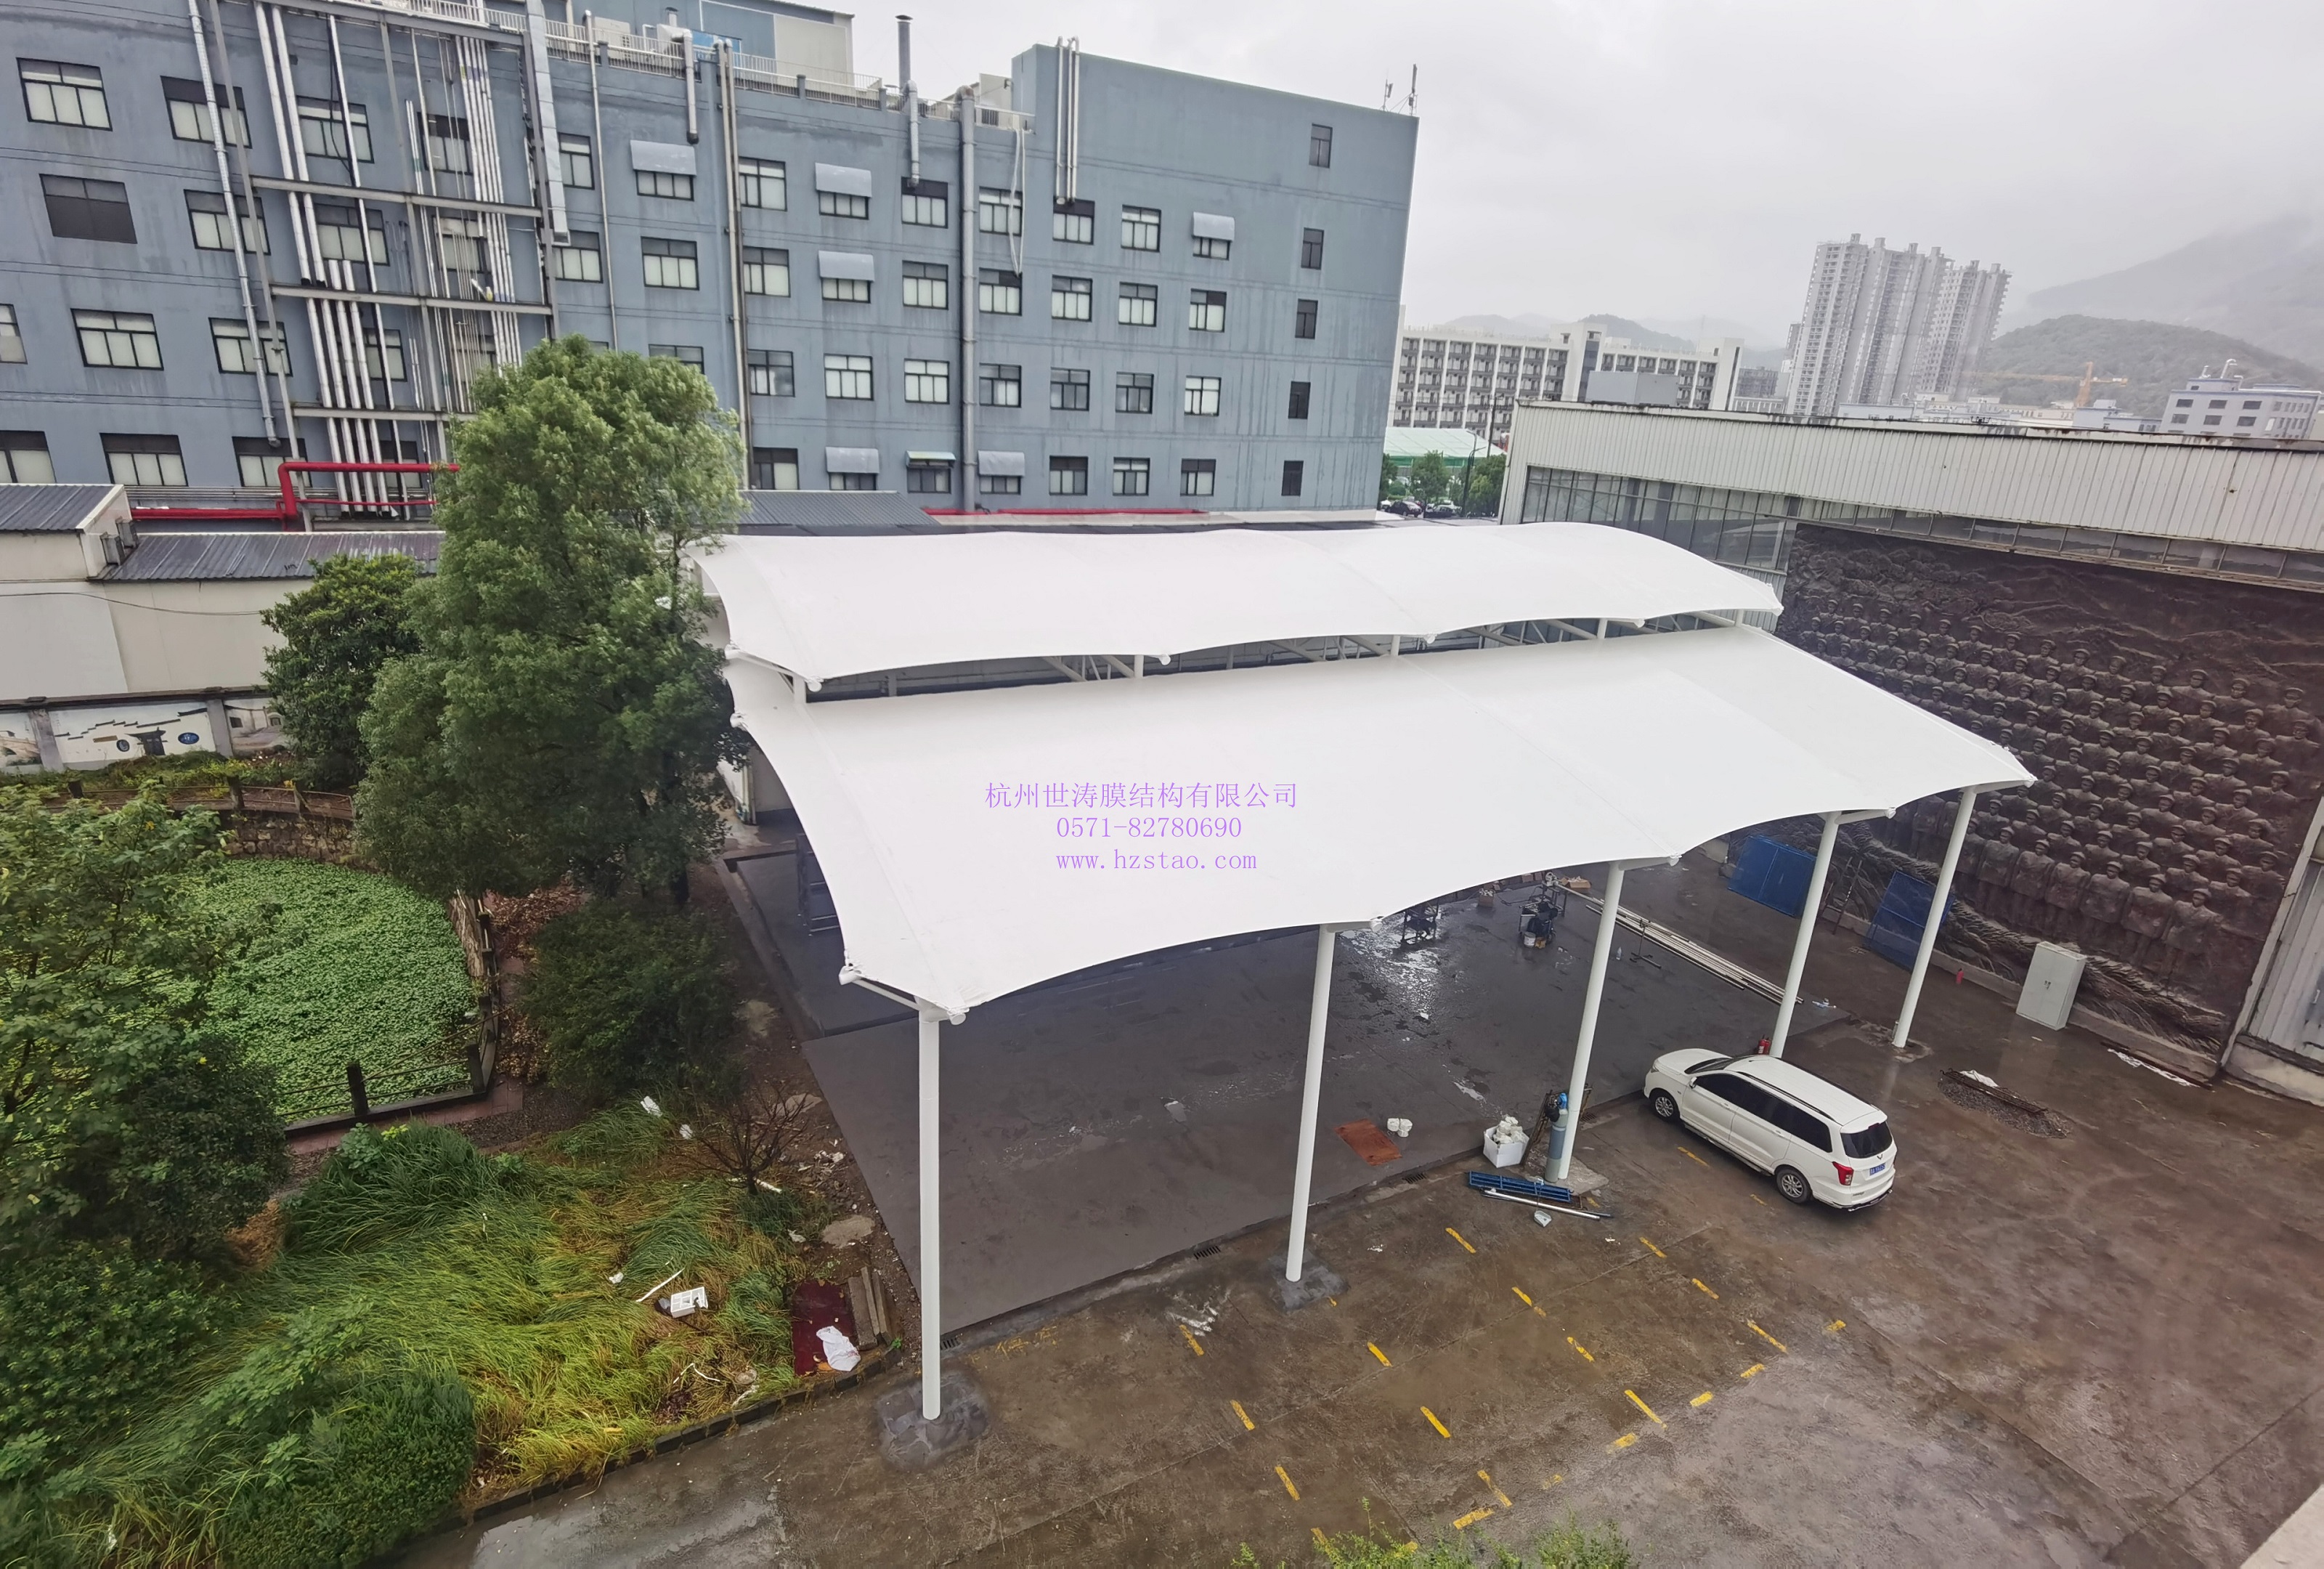 杭州科百特過濾器材有限公司雙層膜結構雨棚竣工